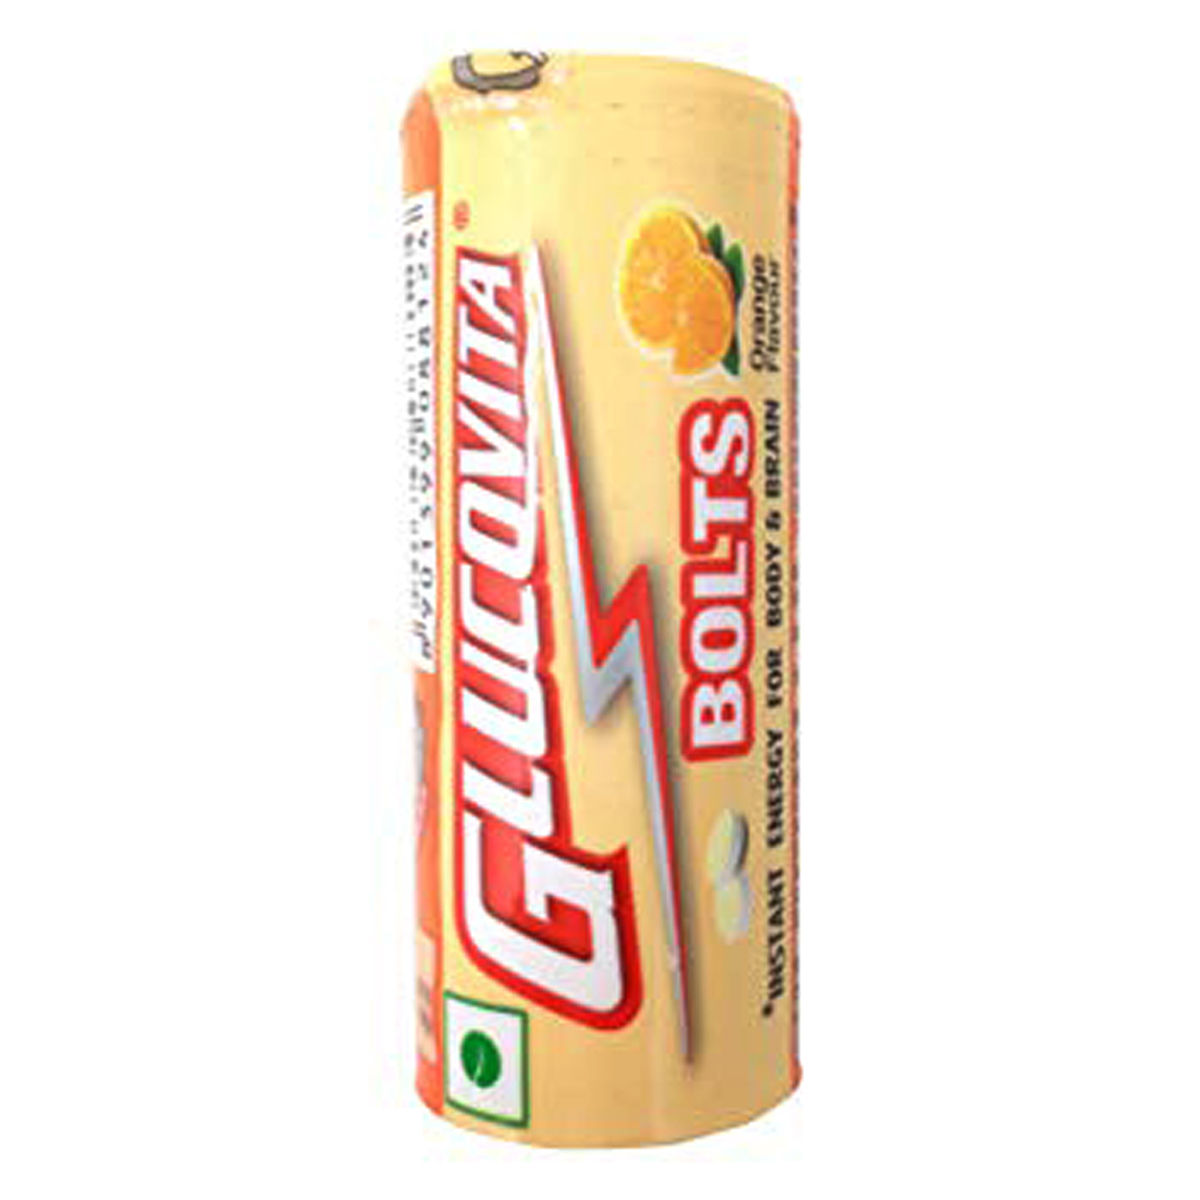 Buy Glucovita Orange Flavour Bolts, 18 gm Online